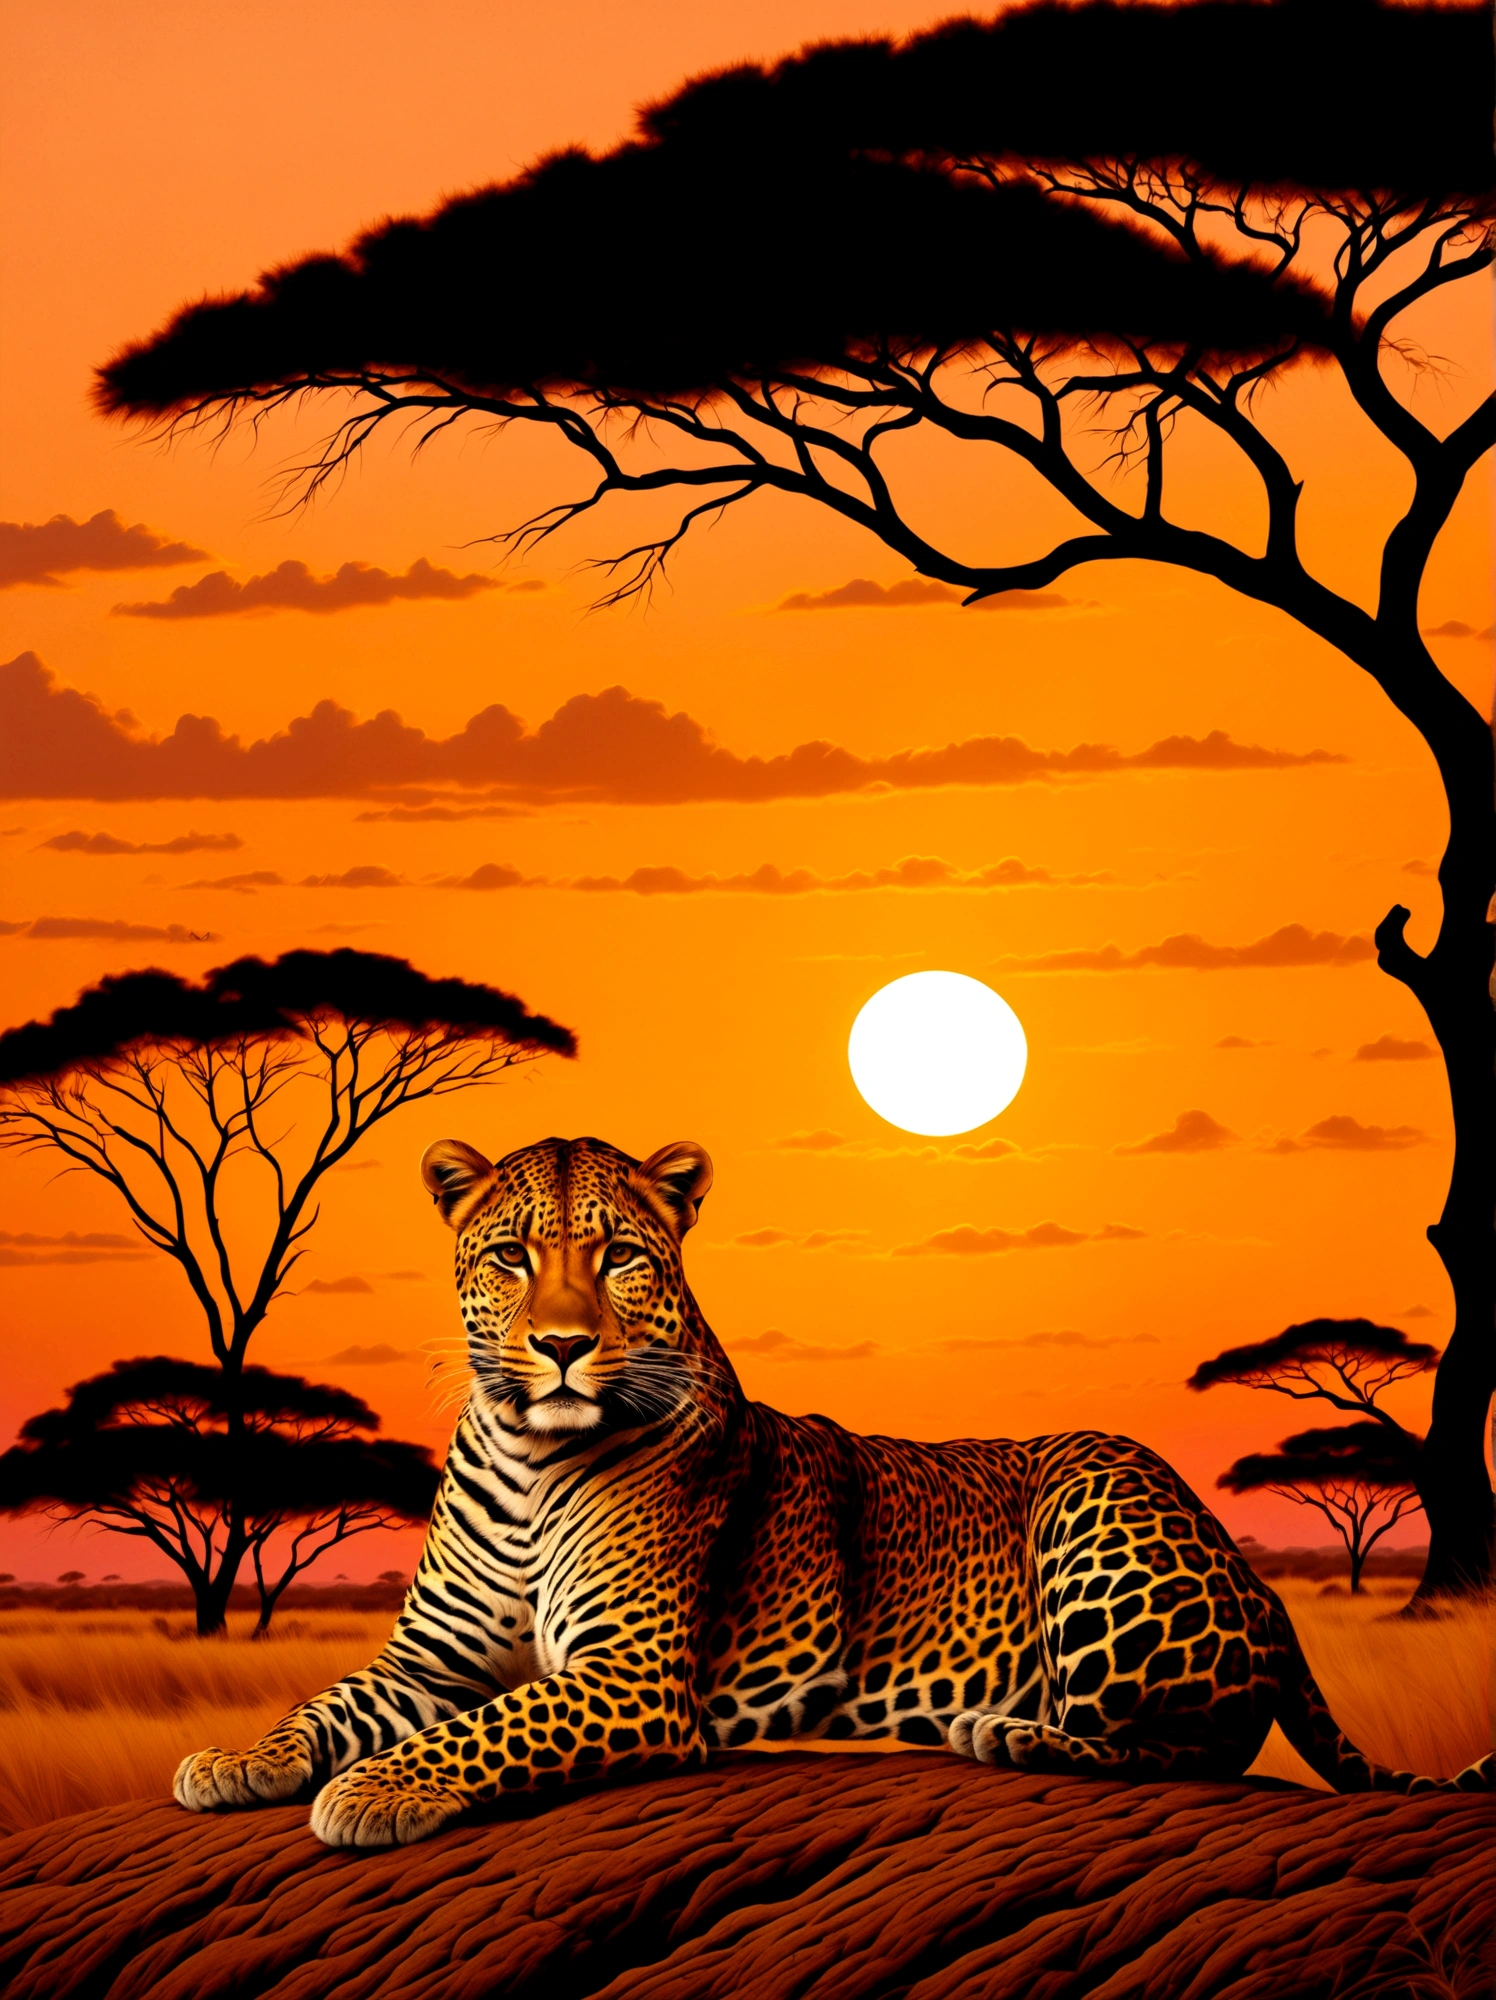 Un leopardo con una corona dorada apoyada en la cabeza., majestuosamente colocado contra el telón de fondo de una puesta de sol en Savannah. La corona brilla ligeramente a la luz del sol mientras la criatura observa sus alrededores.. Los cálidos tonos naranja y rosa del sol poniente cubren la escena, destacando el vibrante pelaje del leopardo. A lo lejos se pueden ver siluetas de acacias., salpicando el vasto paisaje.